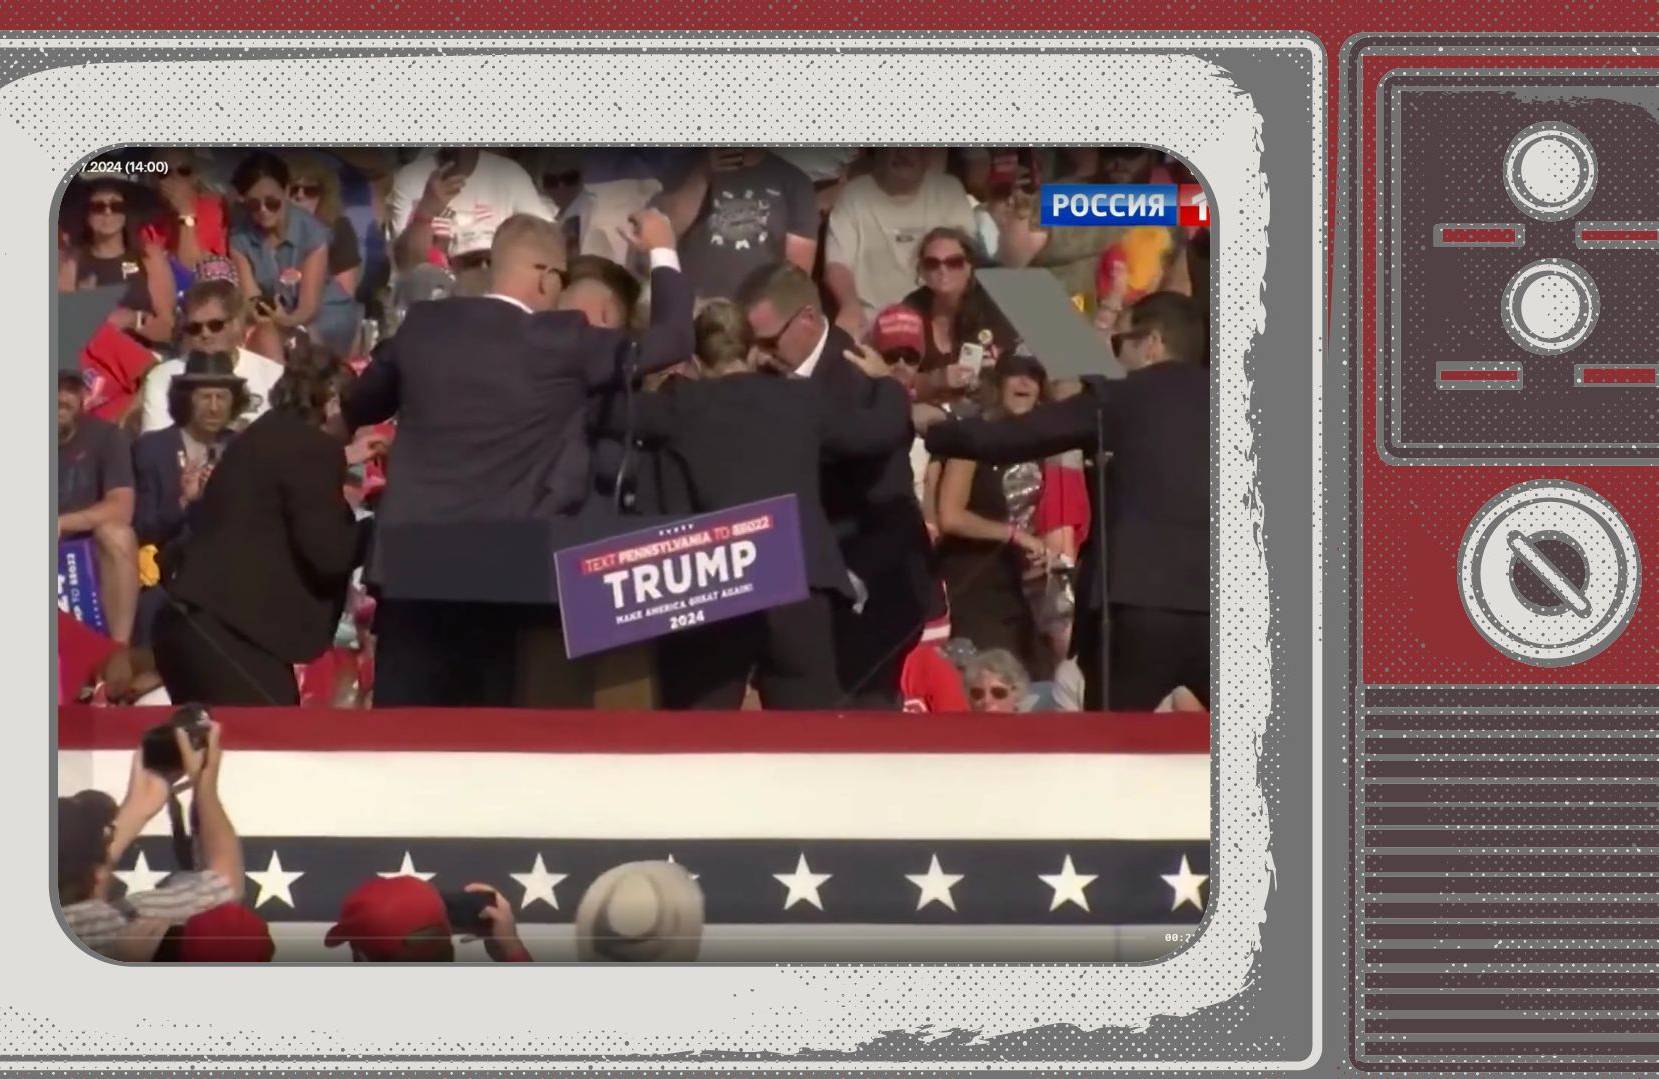 Grafika: kadr z zamachu na Trumpa w ramce starego telewizora